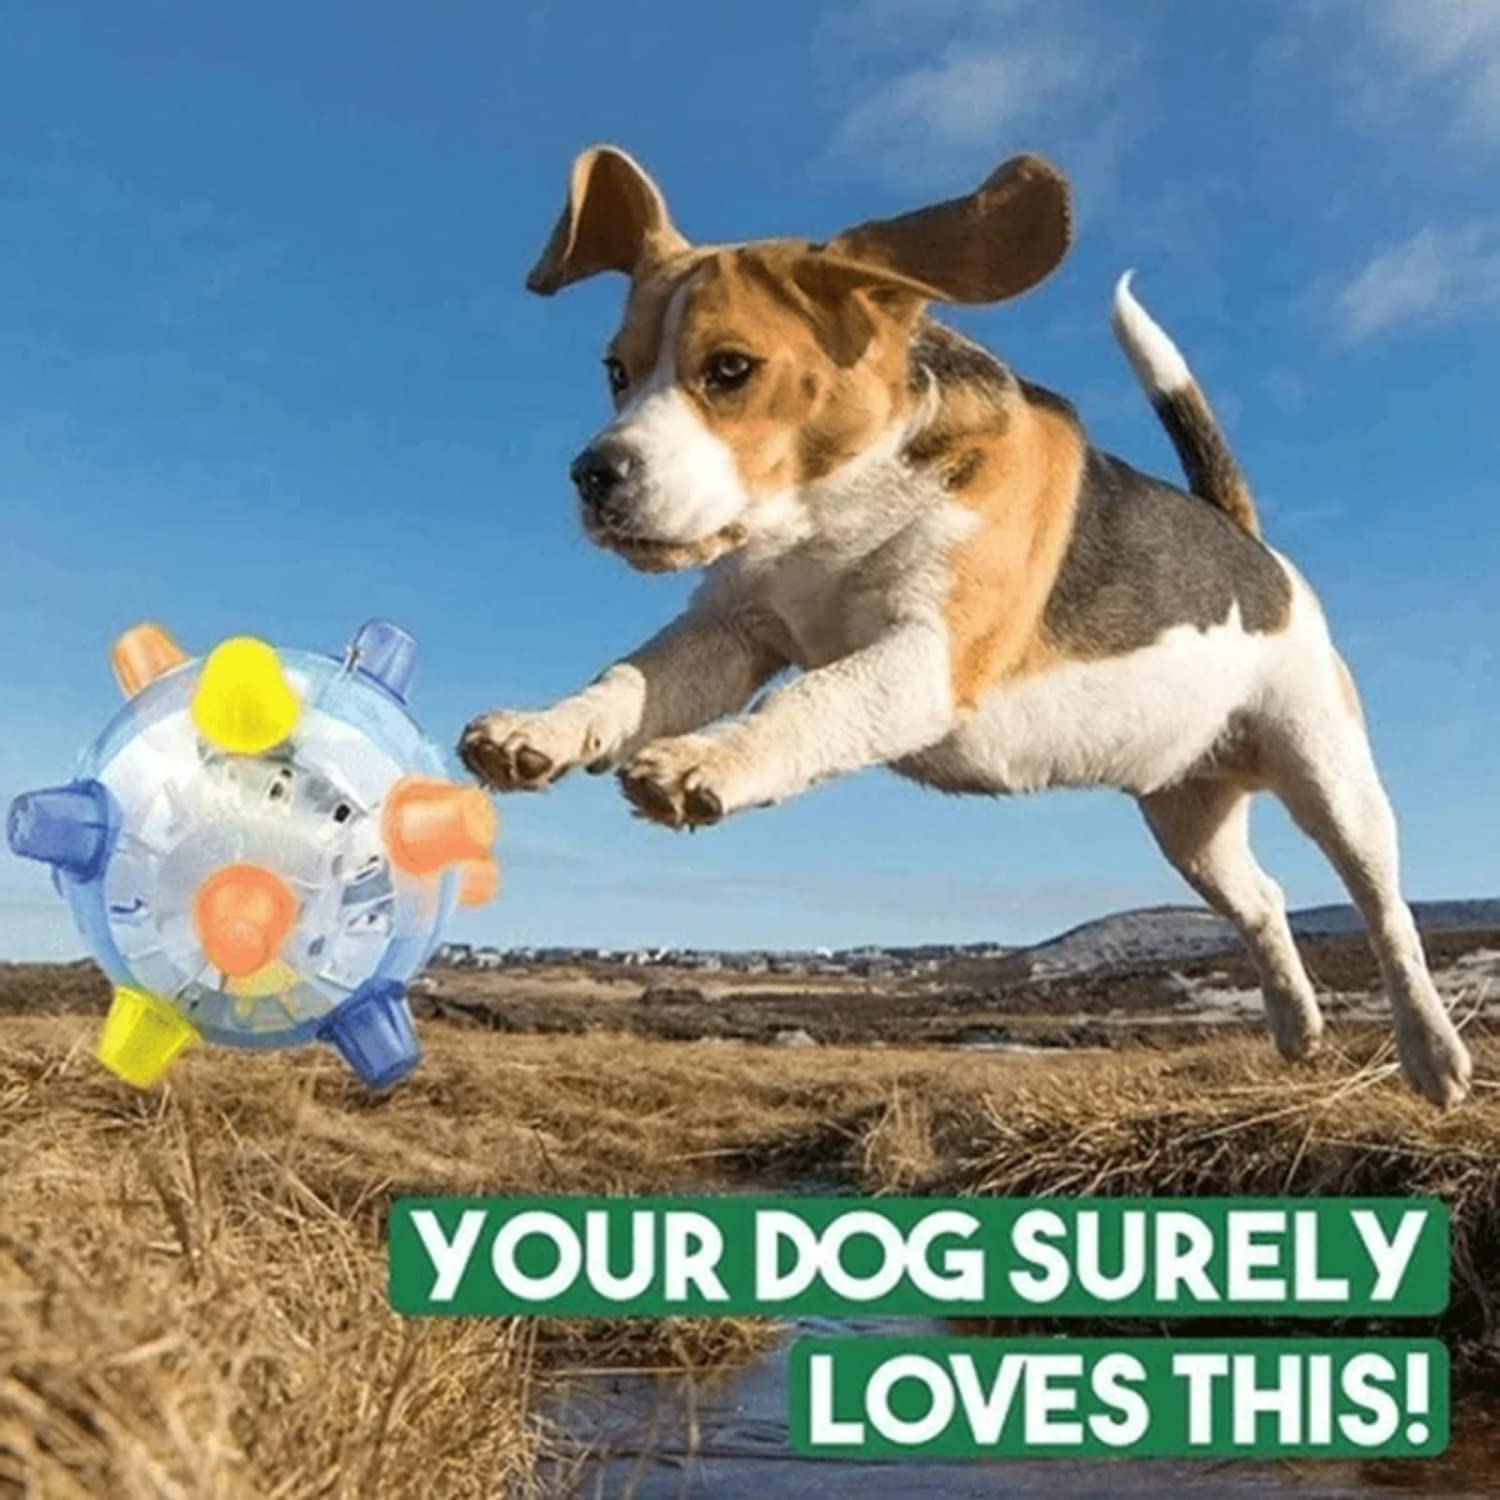 BouncyKid™ - Springactiveringsbal voor Honden en Katten | Vandaag 1+1 Gratis